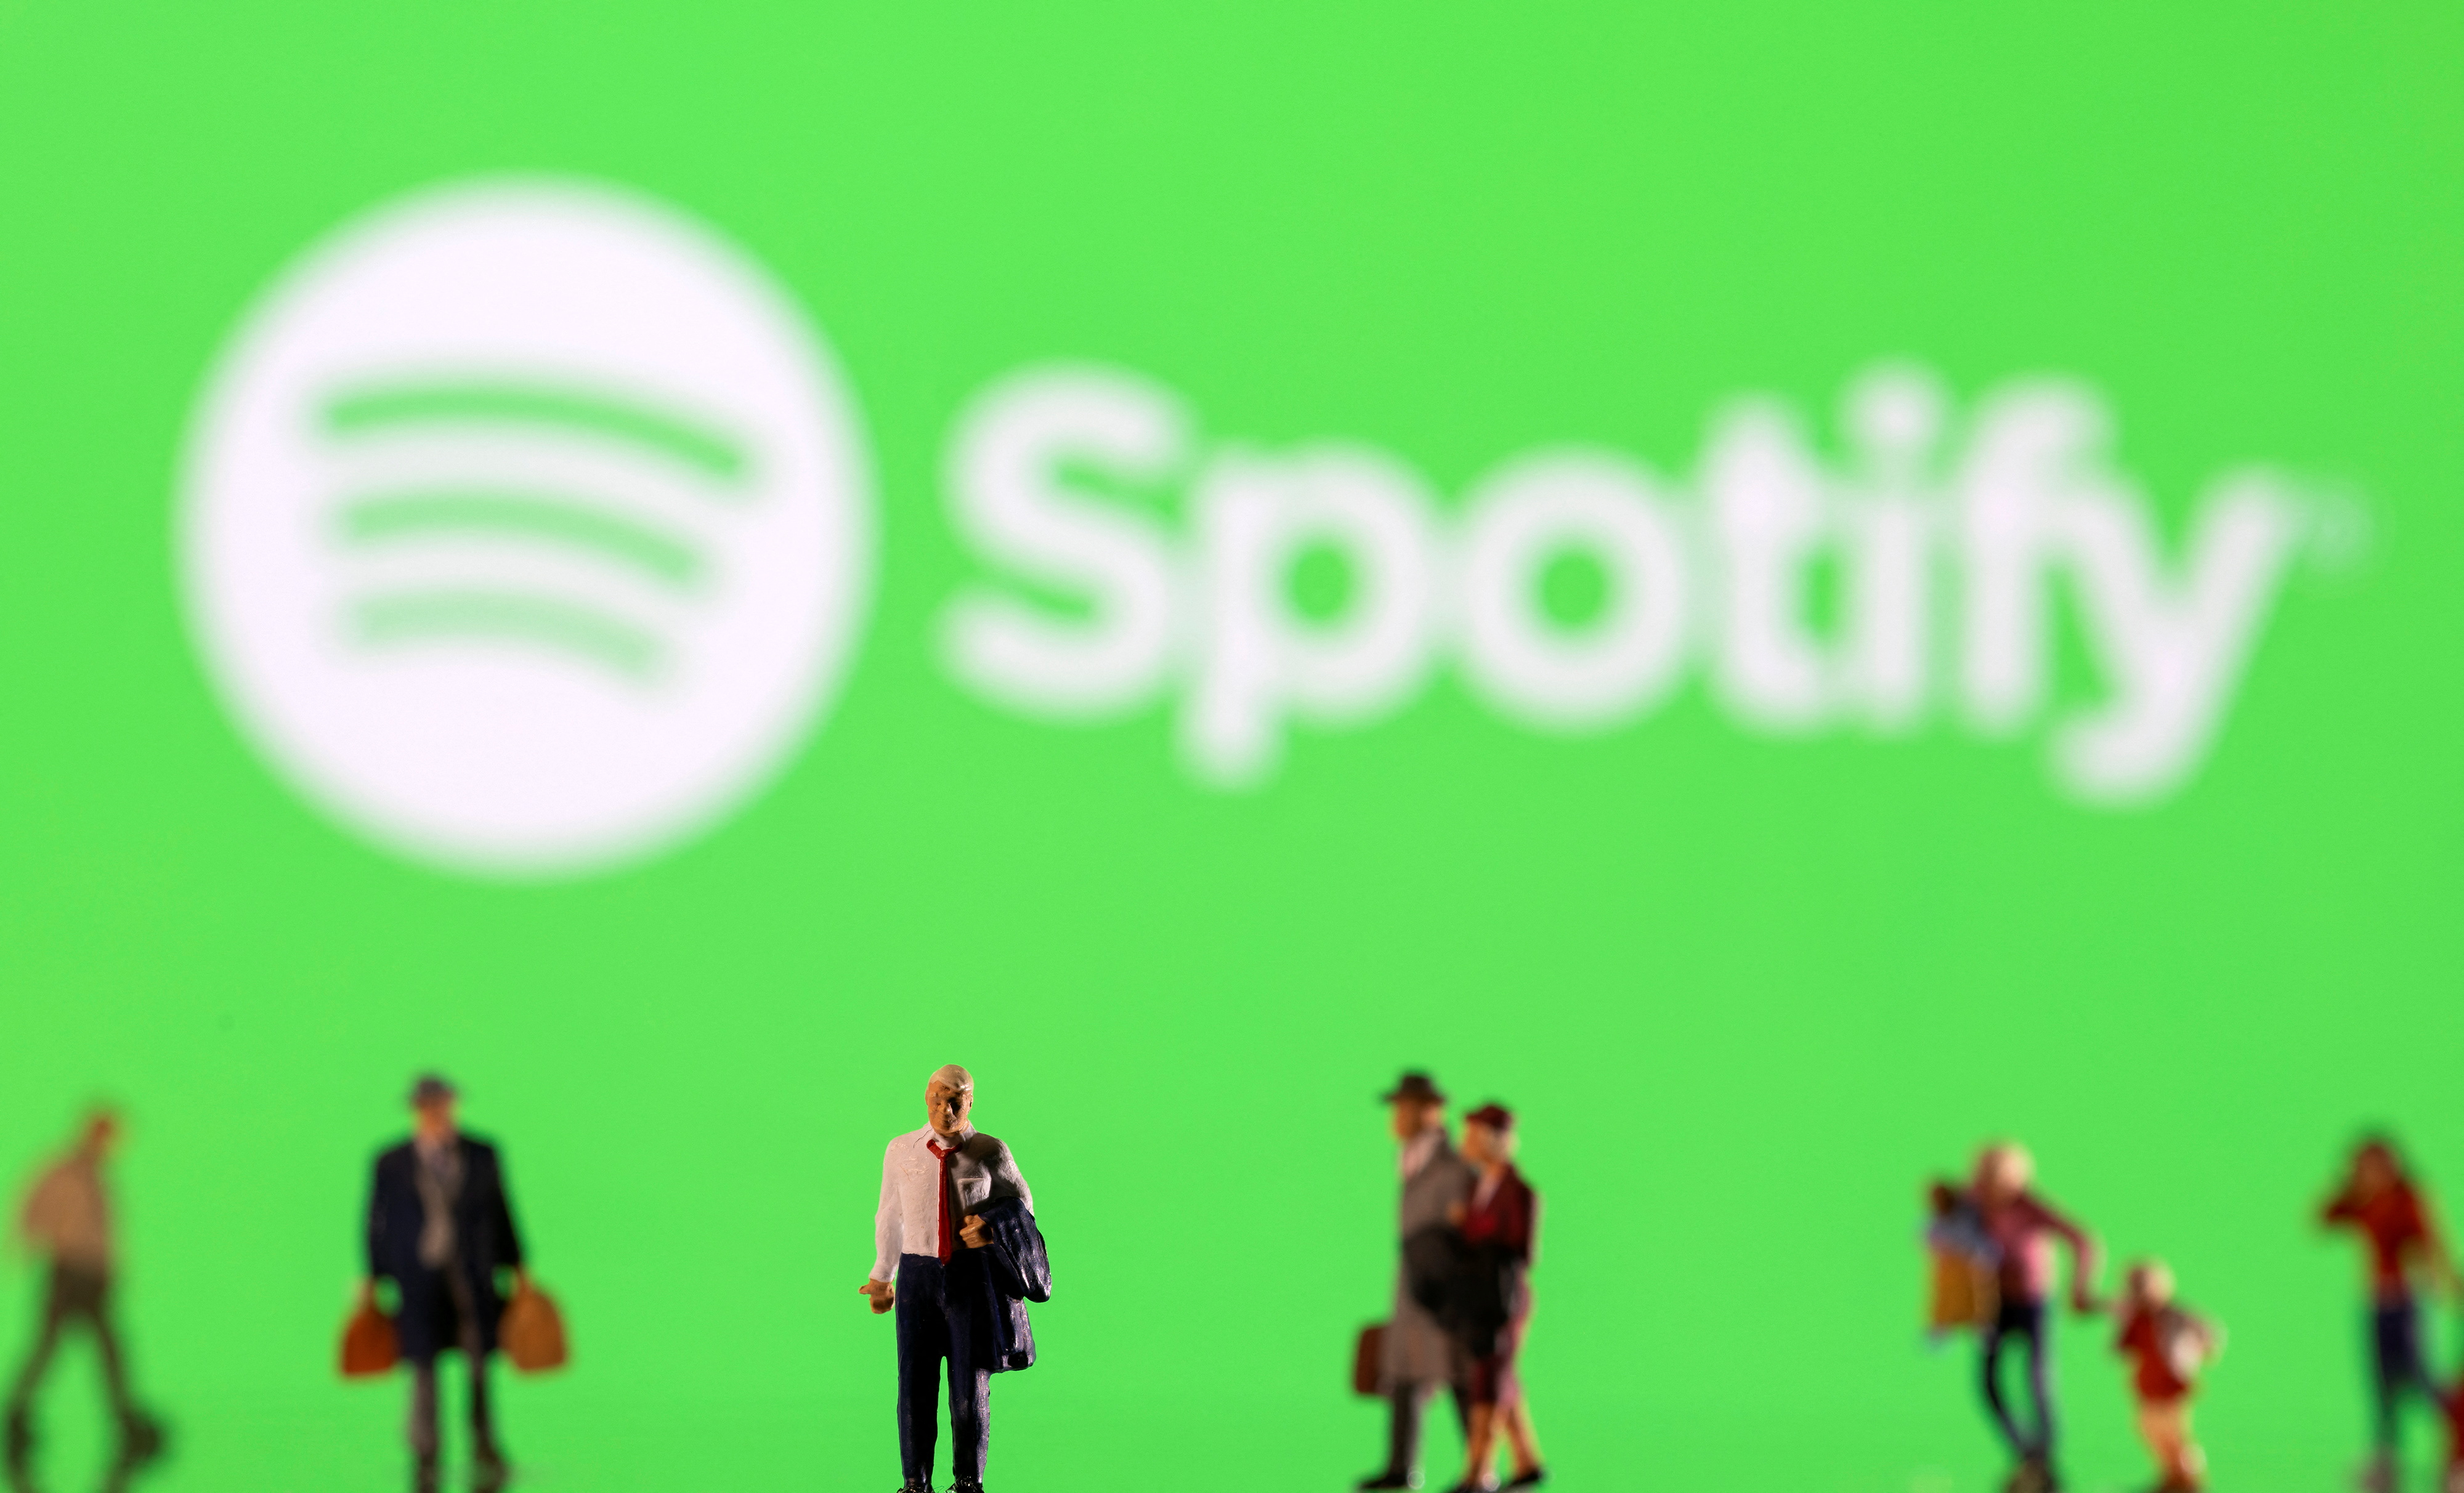 Ilustrasi menunjukkan gambar kecil dan menunjukkan logo Spotify